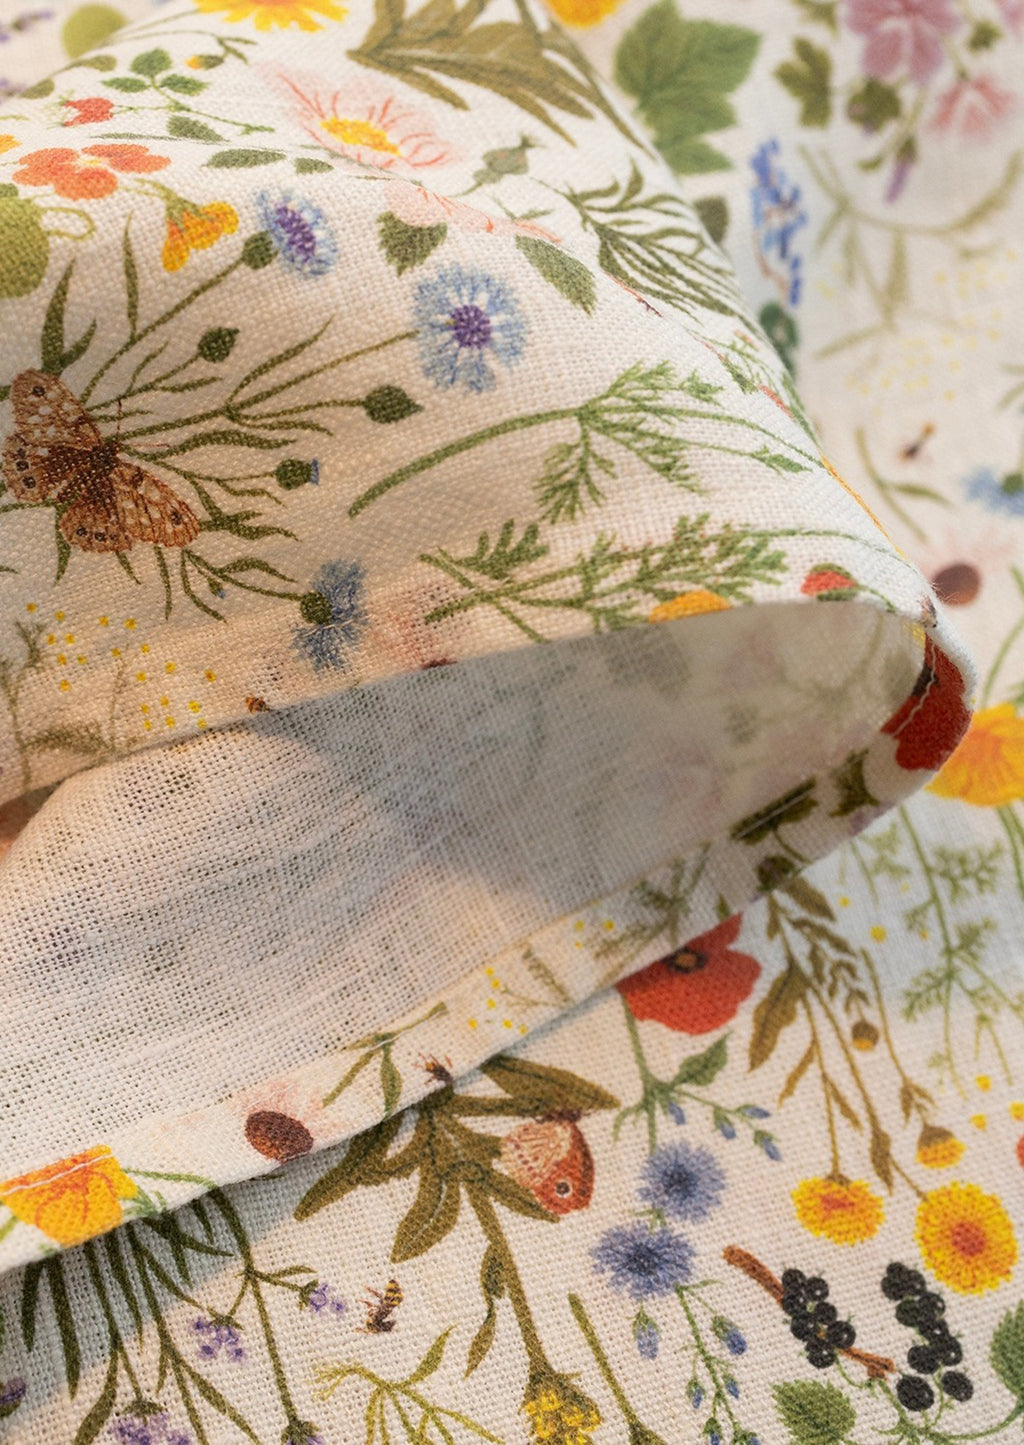 3: A linen tea towel with multicolor floral/botanical print.